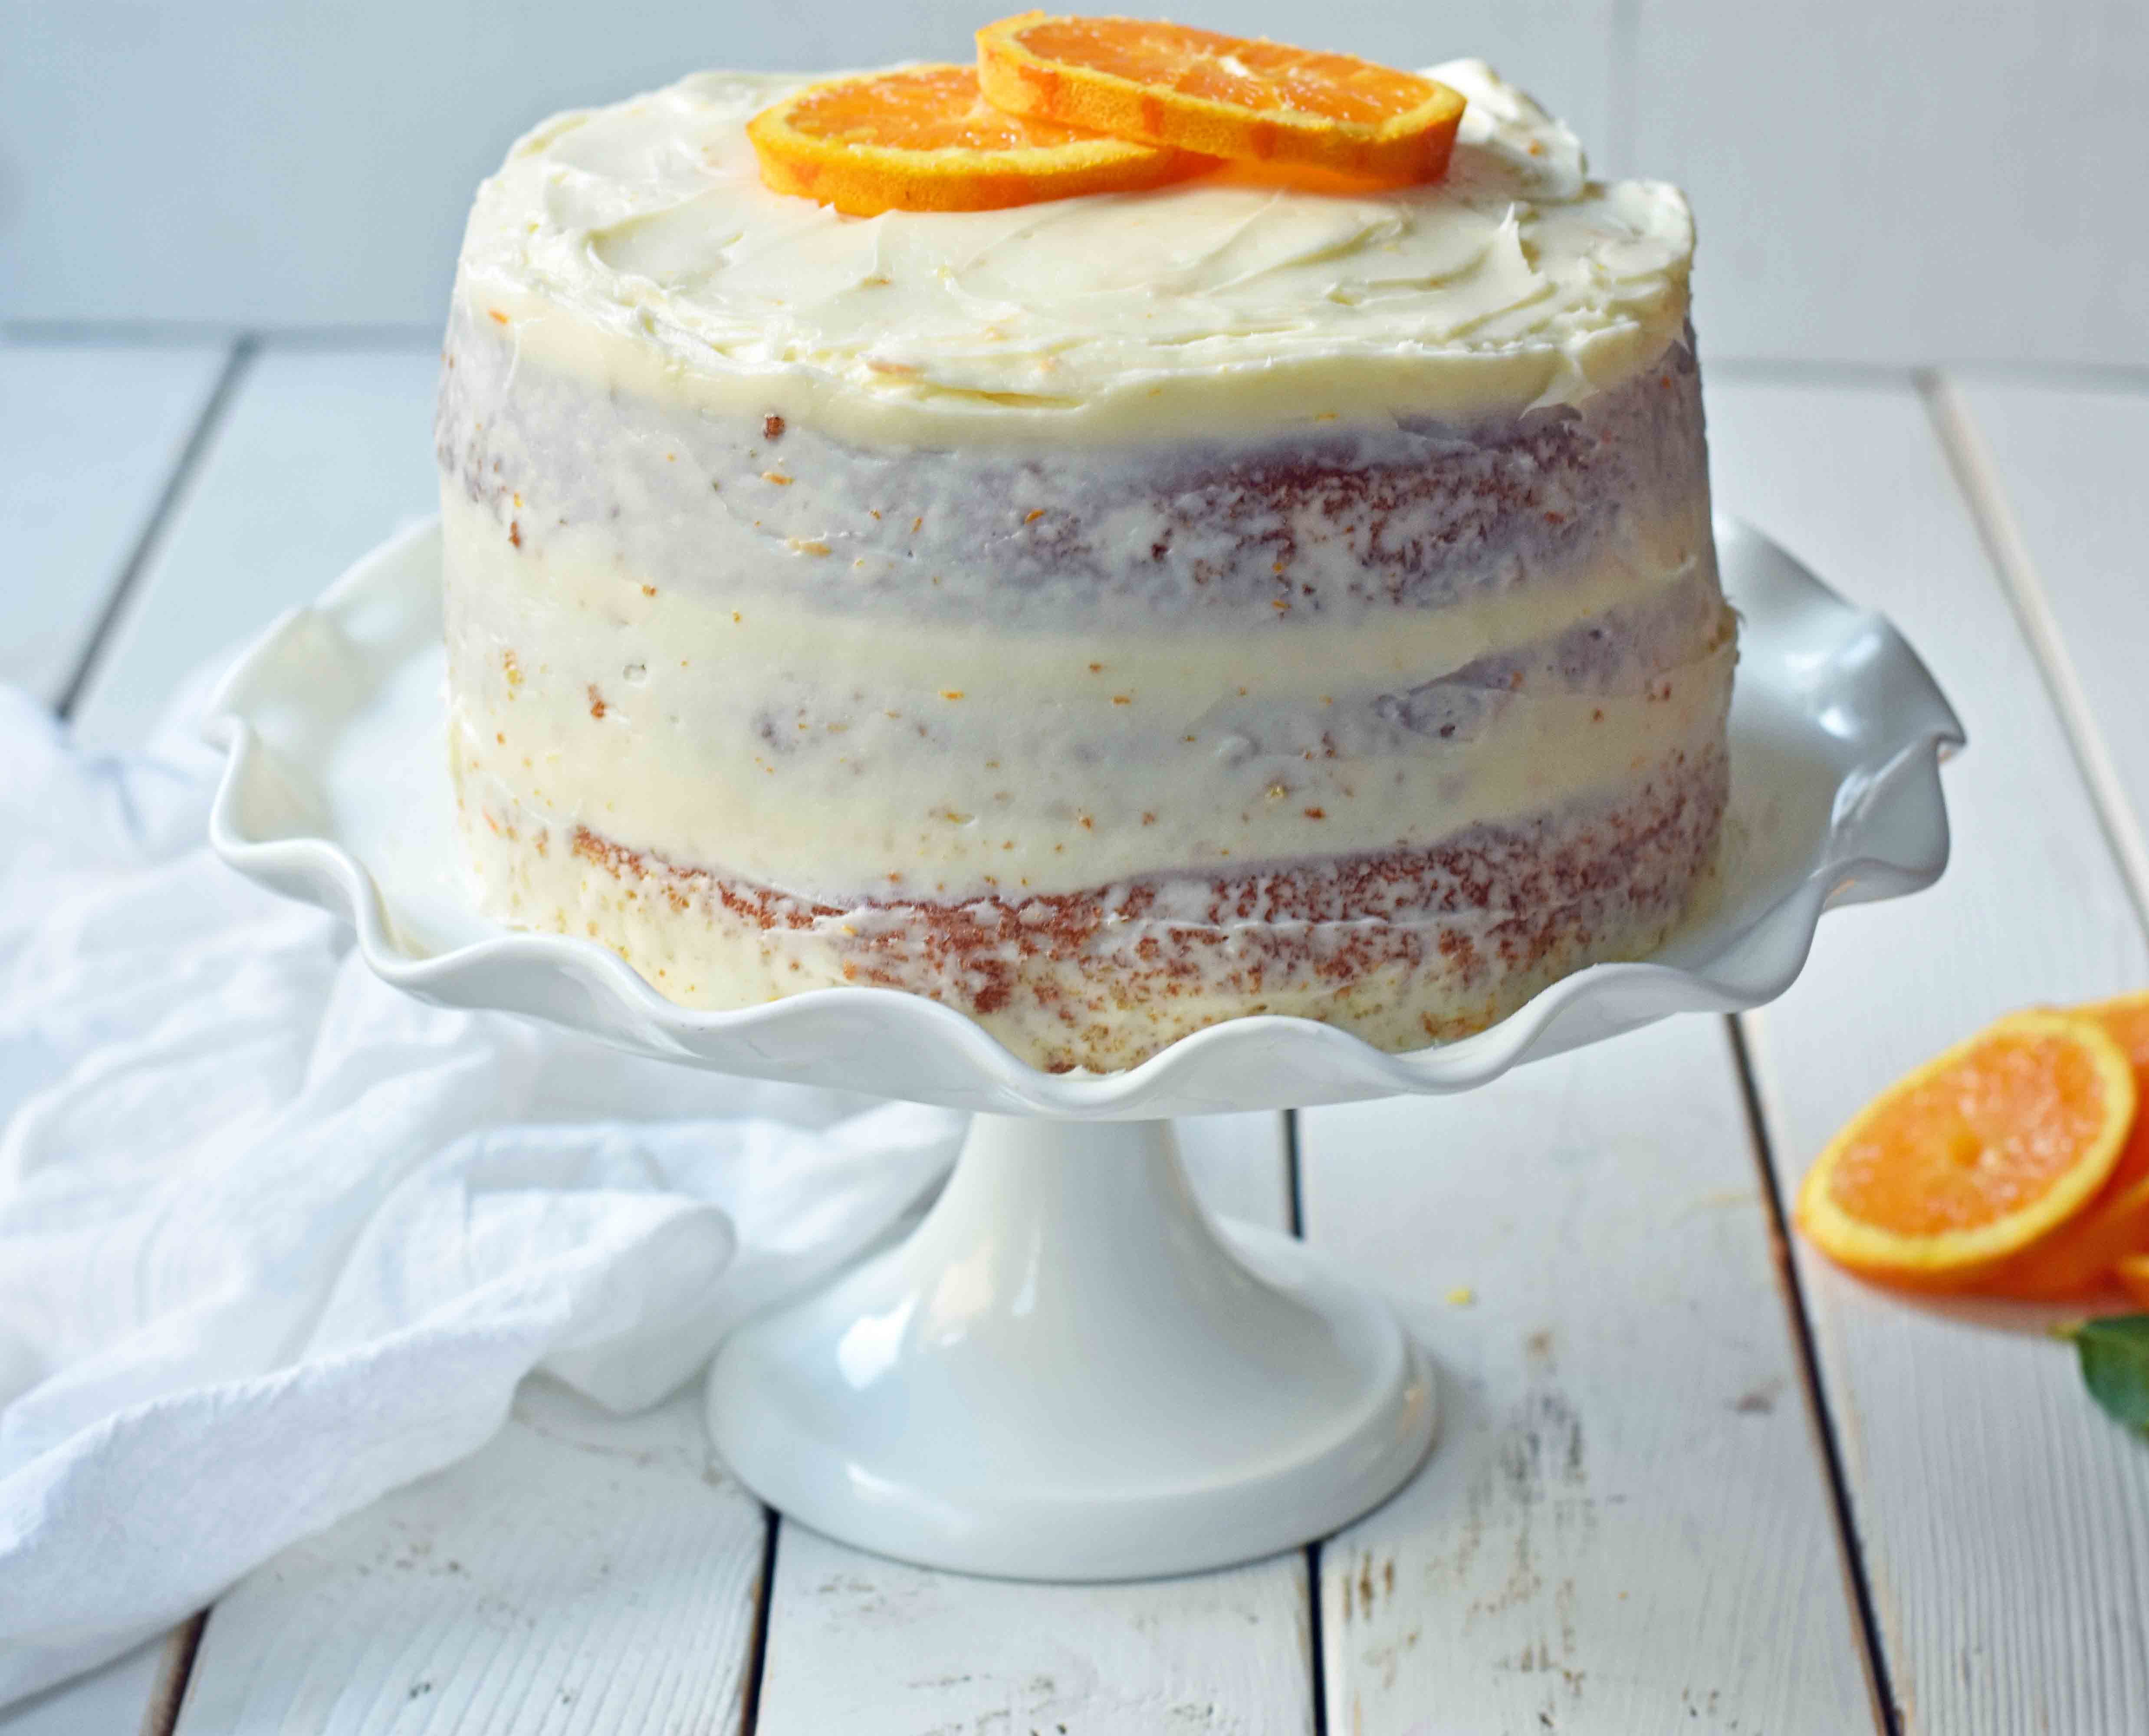 Homemade Orange Cake with Sweet Orange Cream Cheese Frosting. How to make the best orange cake. Orange cake with orange frosting. Naked orange cake. www.modernhoney.com #cake #orangecake #nakedcake #nakedorangecake